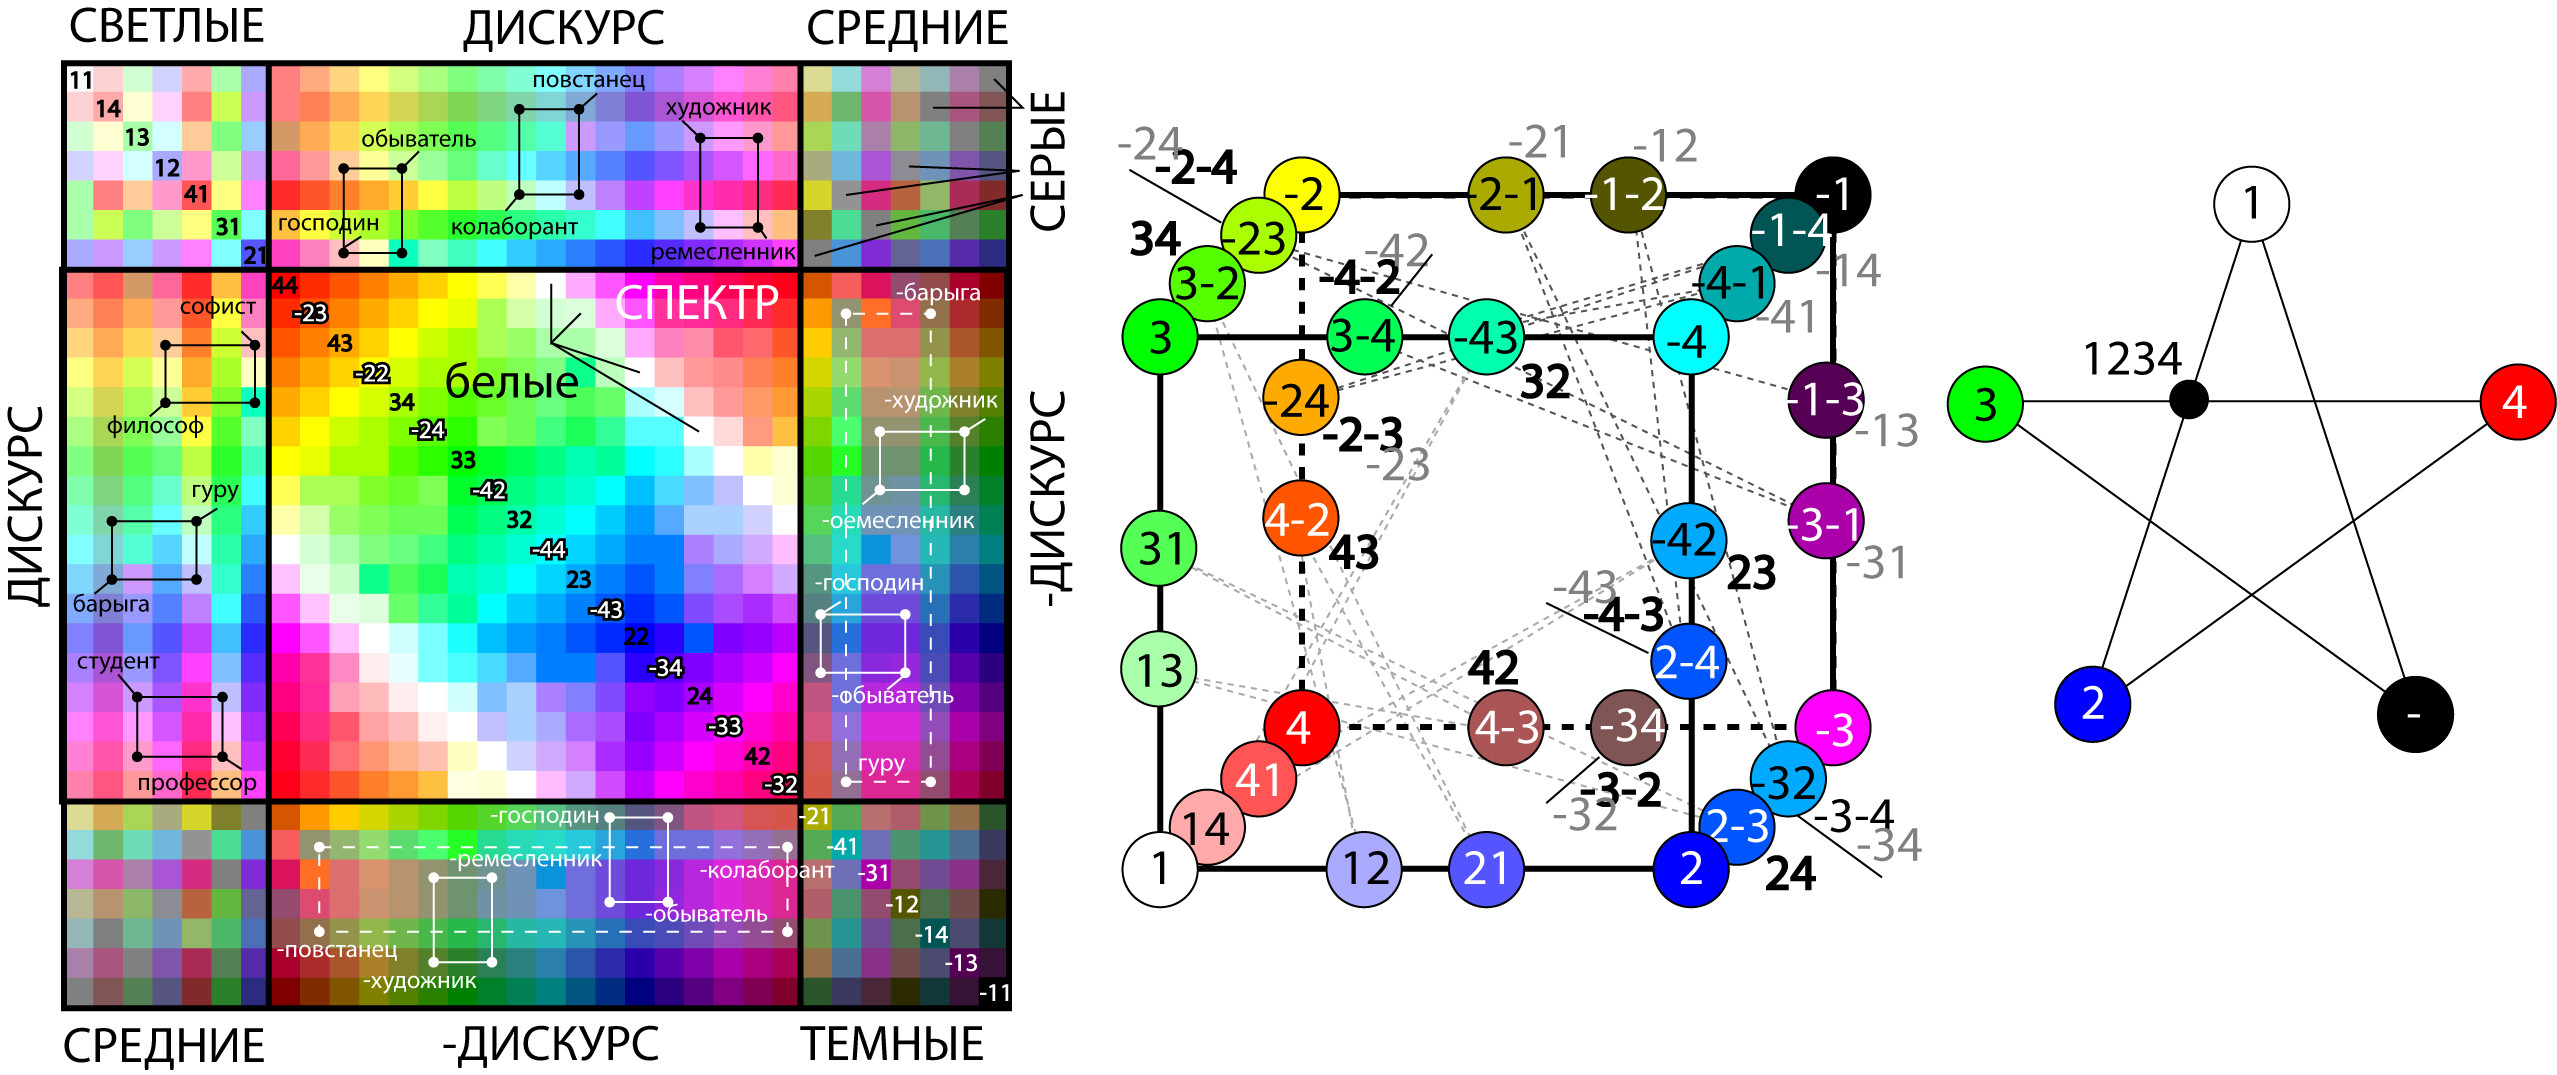 Карта вселенной как&nbsp;пространство цвета. Симметрии теории и&nbsp;игр и&nbsp;пентаграмма Конфуция.